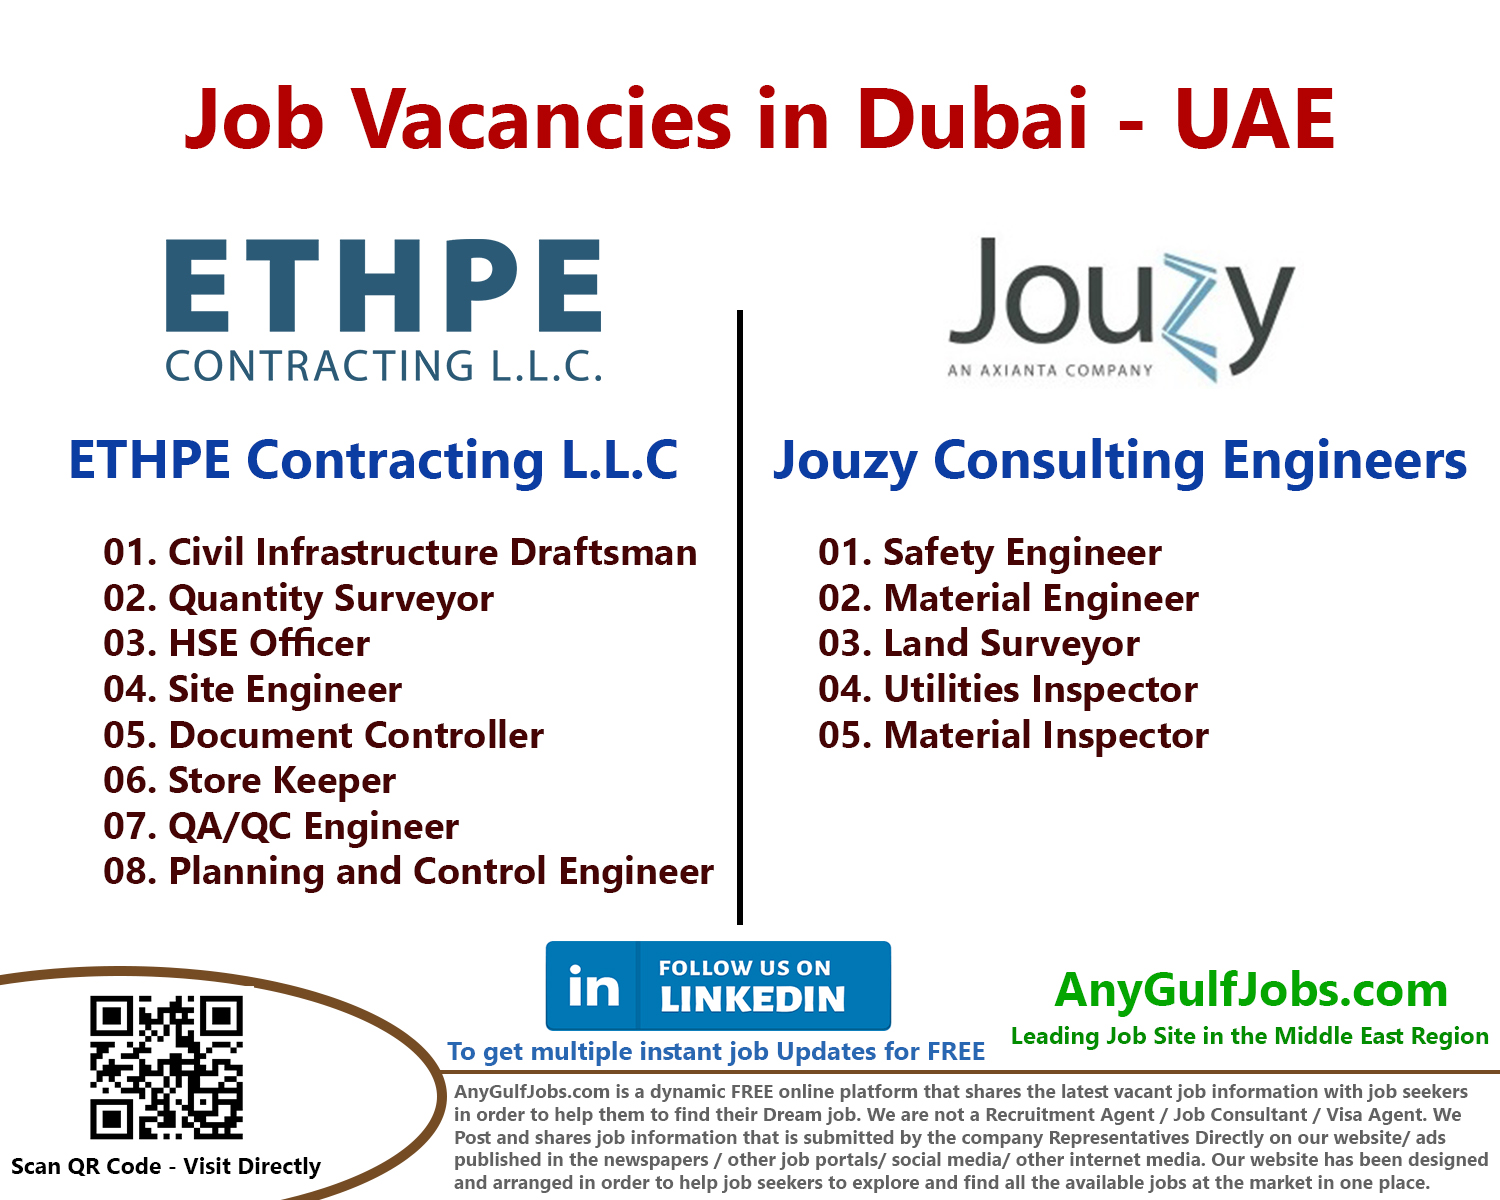 ETHPE Contracting L.L.C Job Vacancies in Dubai - UAE Vacancies